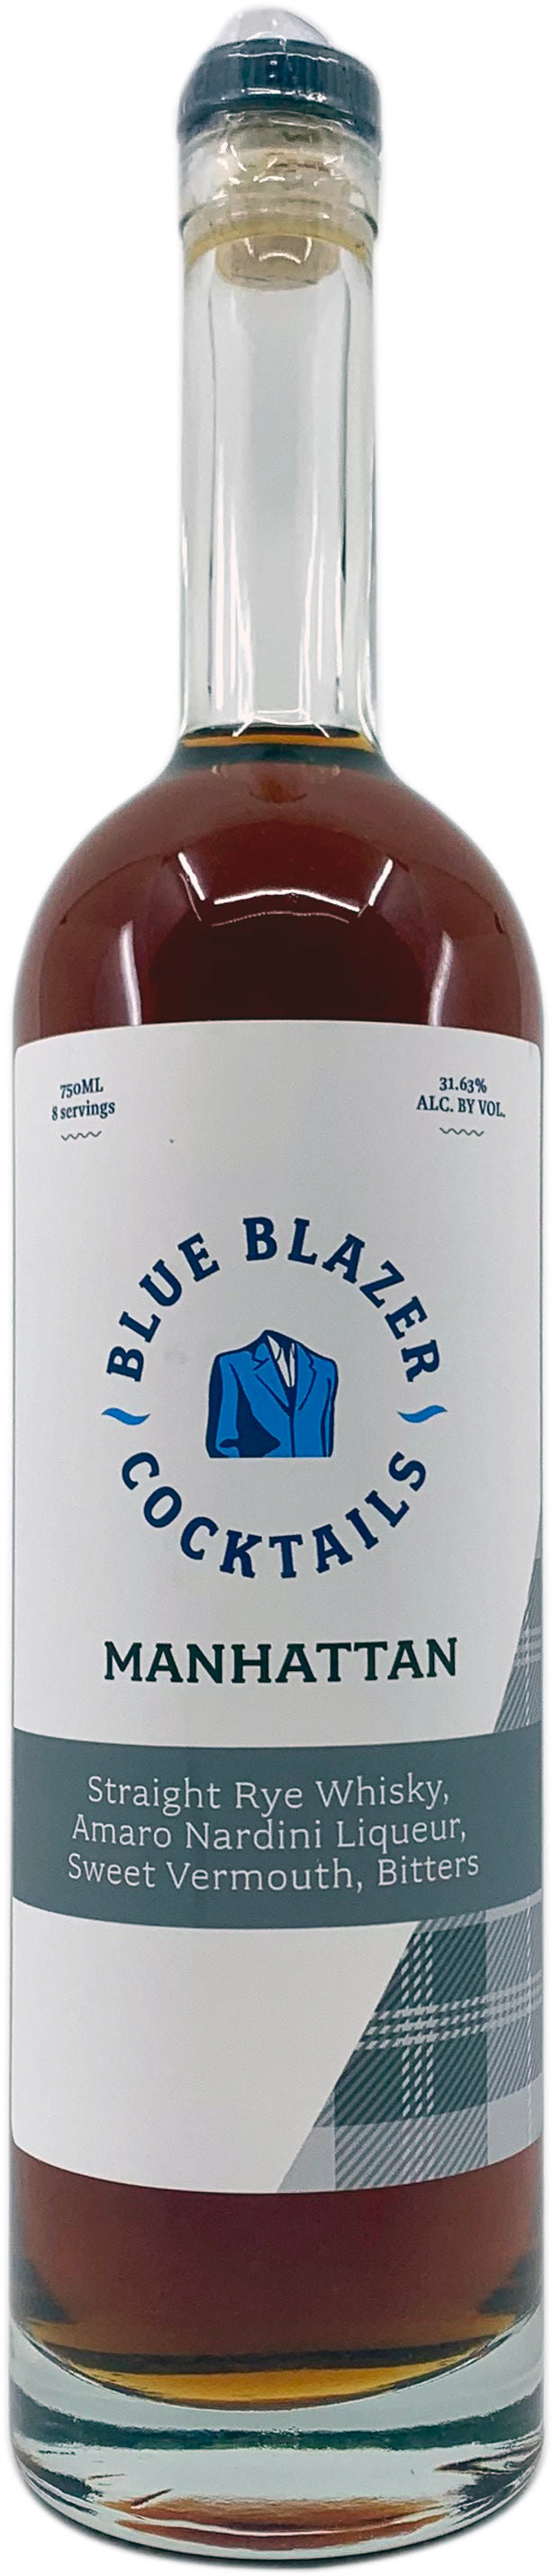 Blue Blazer Manhattan Cocktail